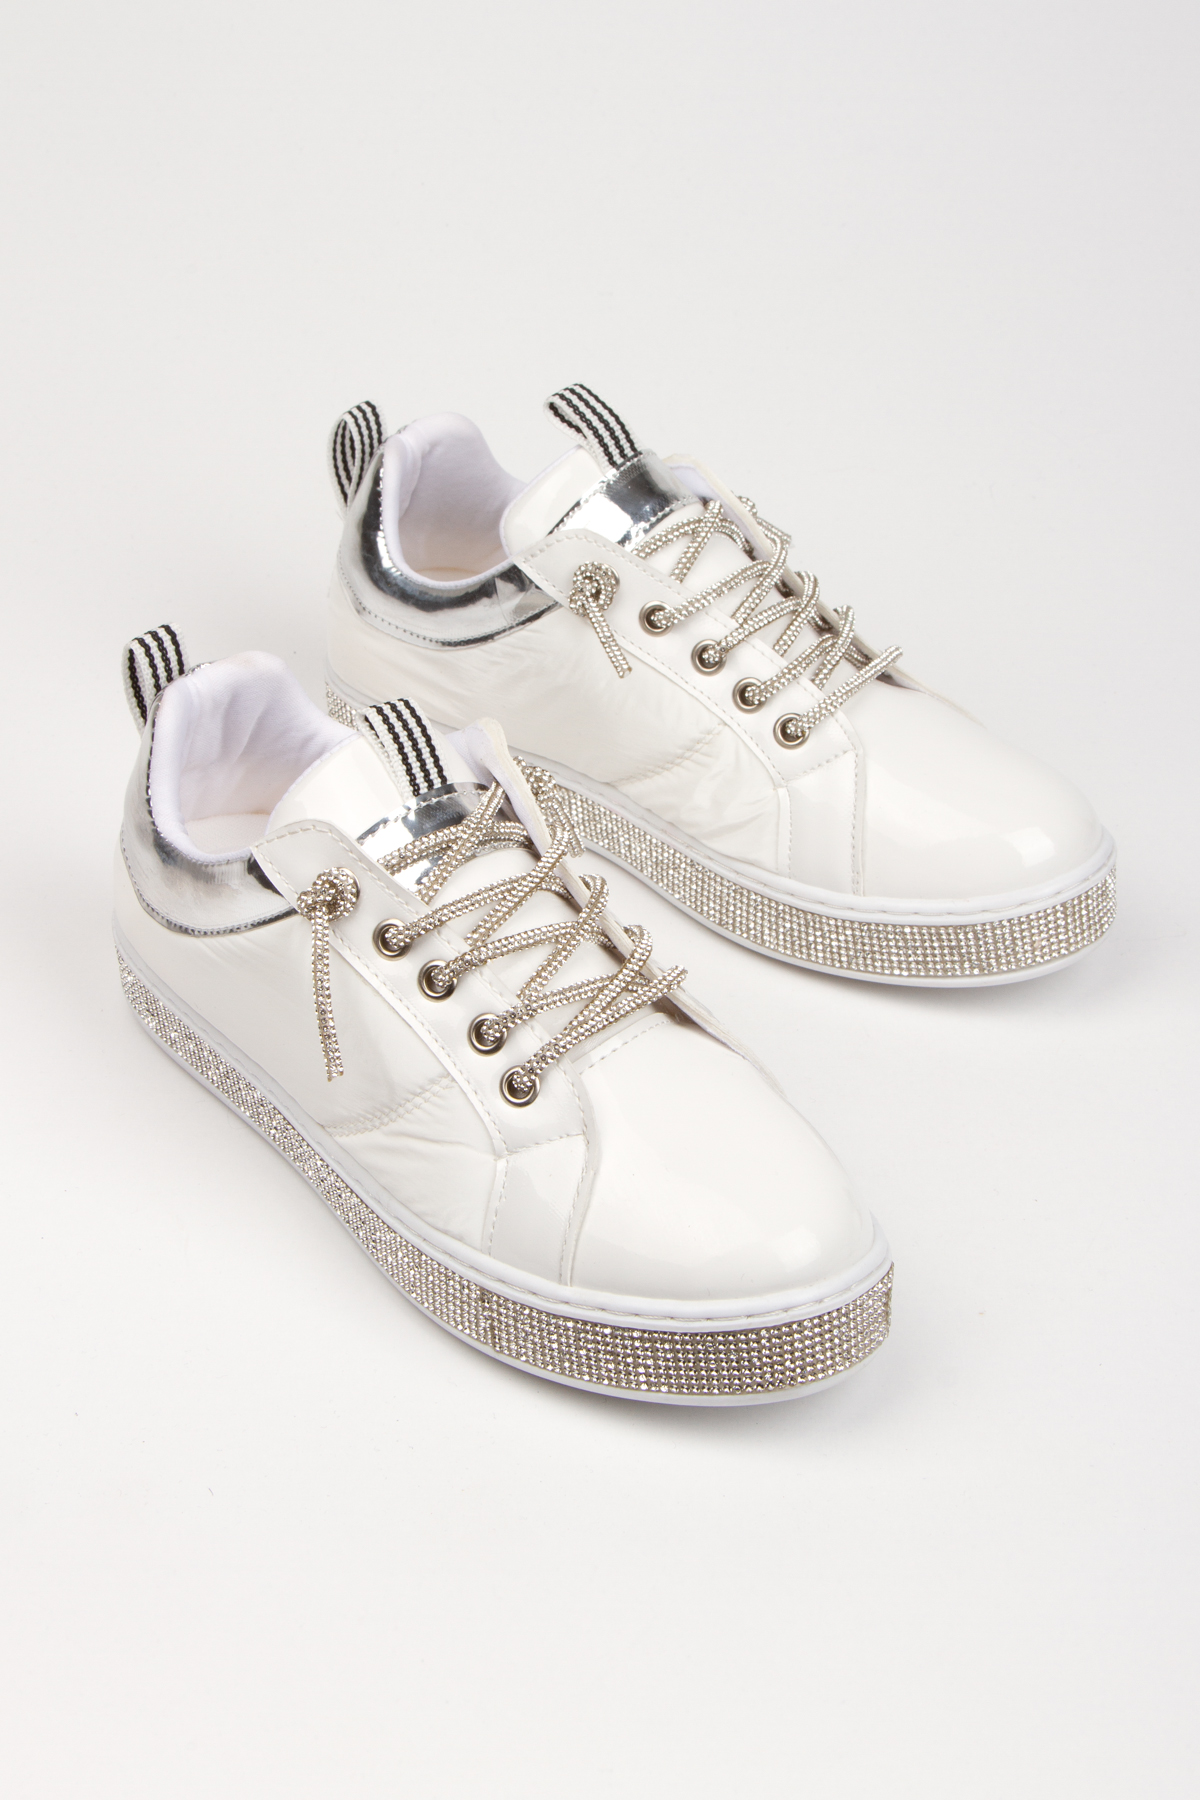 Kadın Özel Üretim Taşlı Bağcık Spor Ayakkabı Beyaz